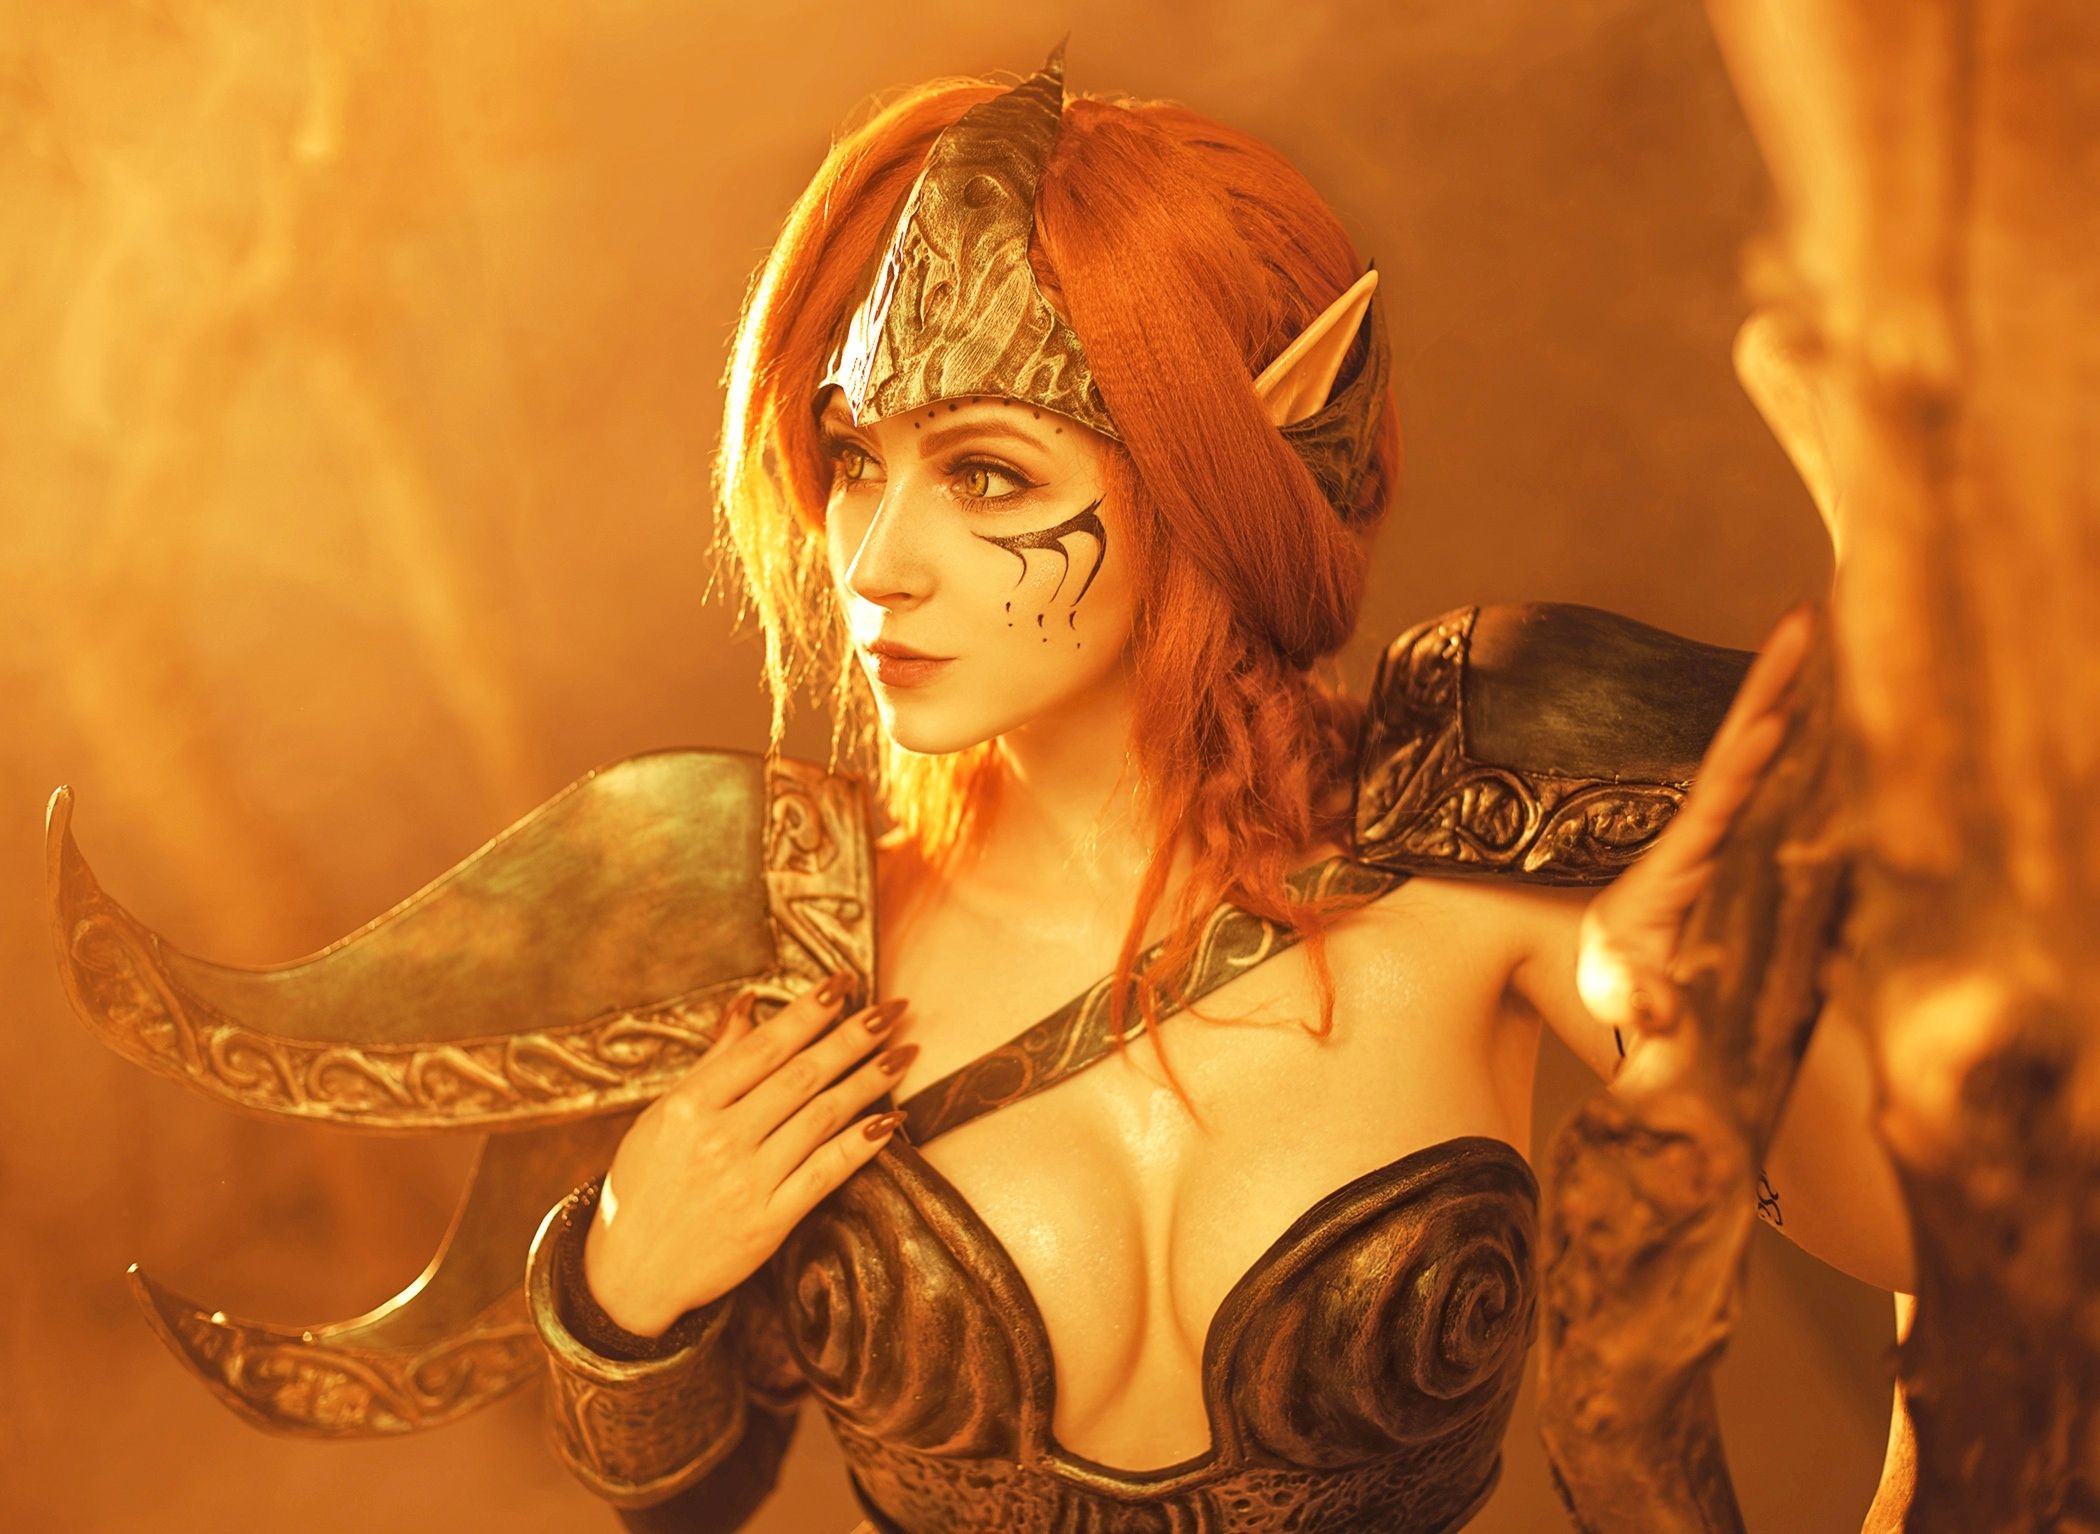 Косплей на богиню Морровинда из The Elder Scrolls. Косплеер: Роксолана Ридель. Персонаж: Альмалексия. Источник: vk.com/roxolanacosplay